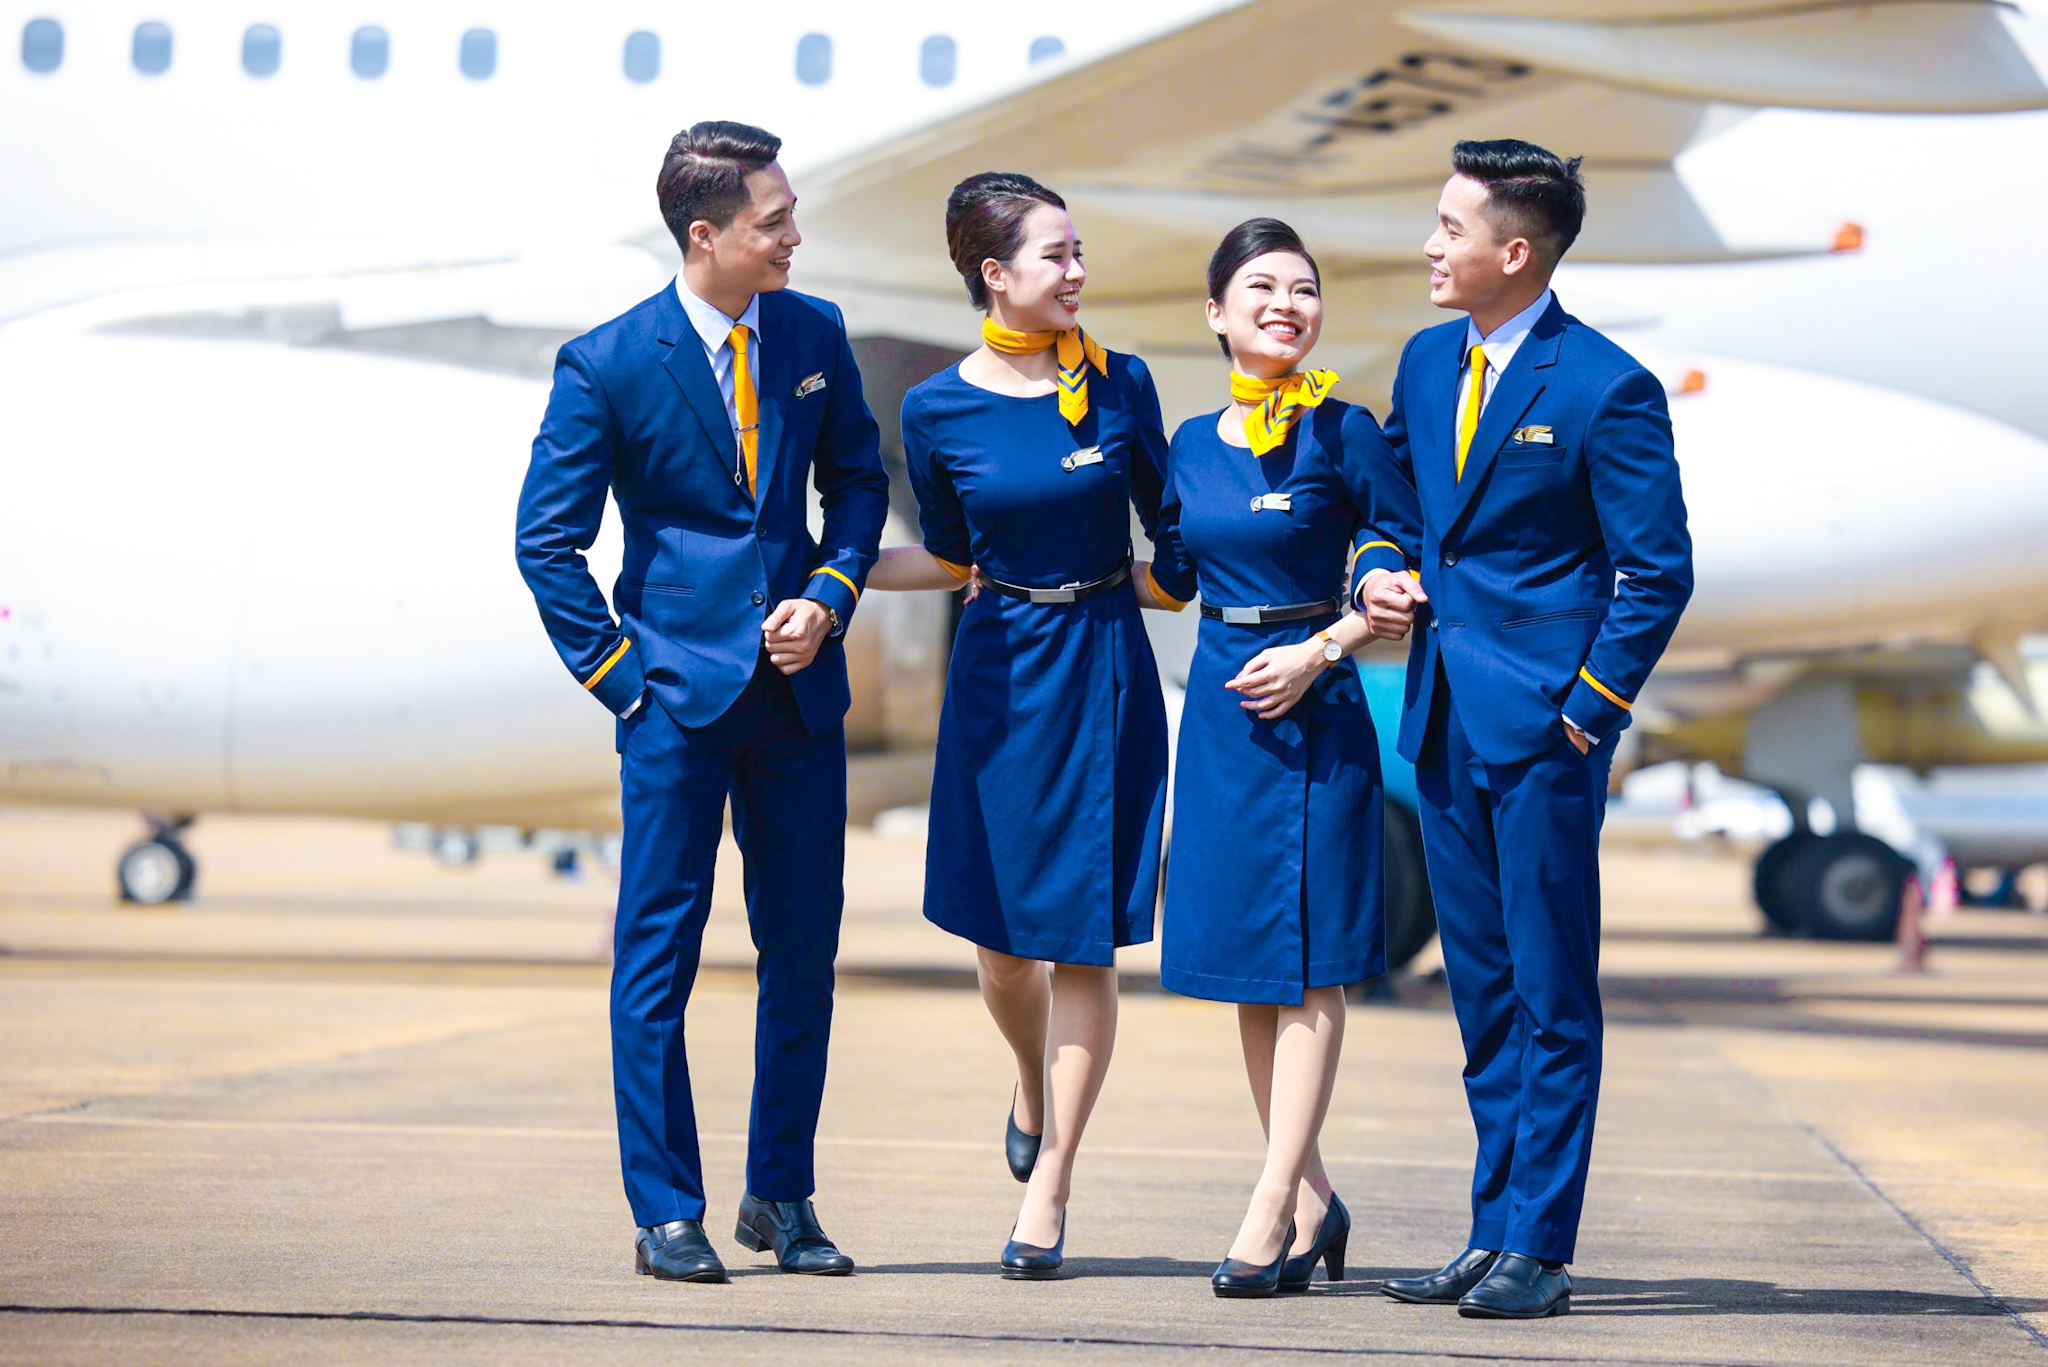 Đội ngũ tiếp viên Pacific Airlines được đào tạo và phục vụ hành khách theo các chuẩn mực của Vietnam Airlines